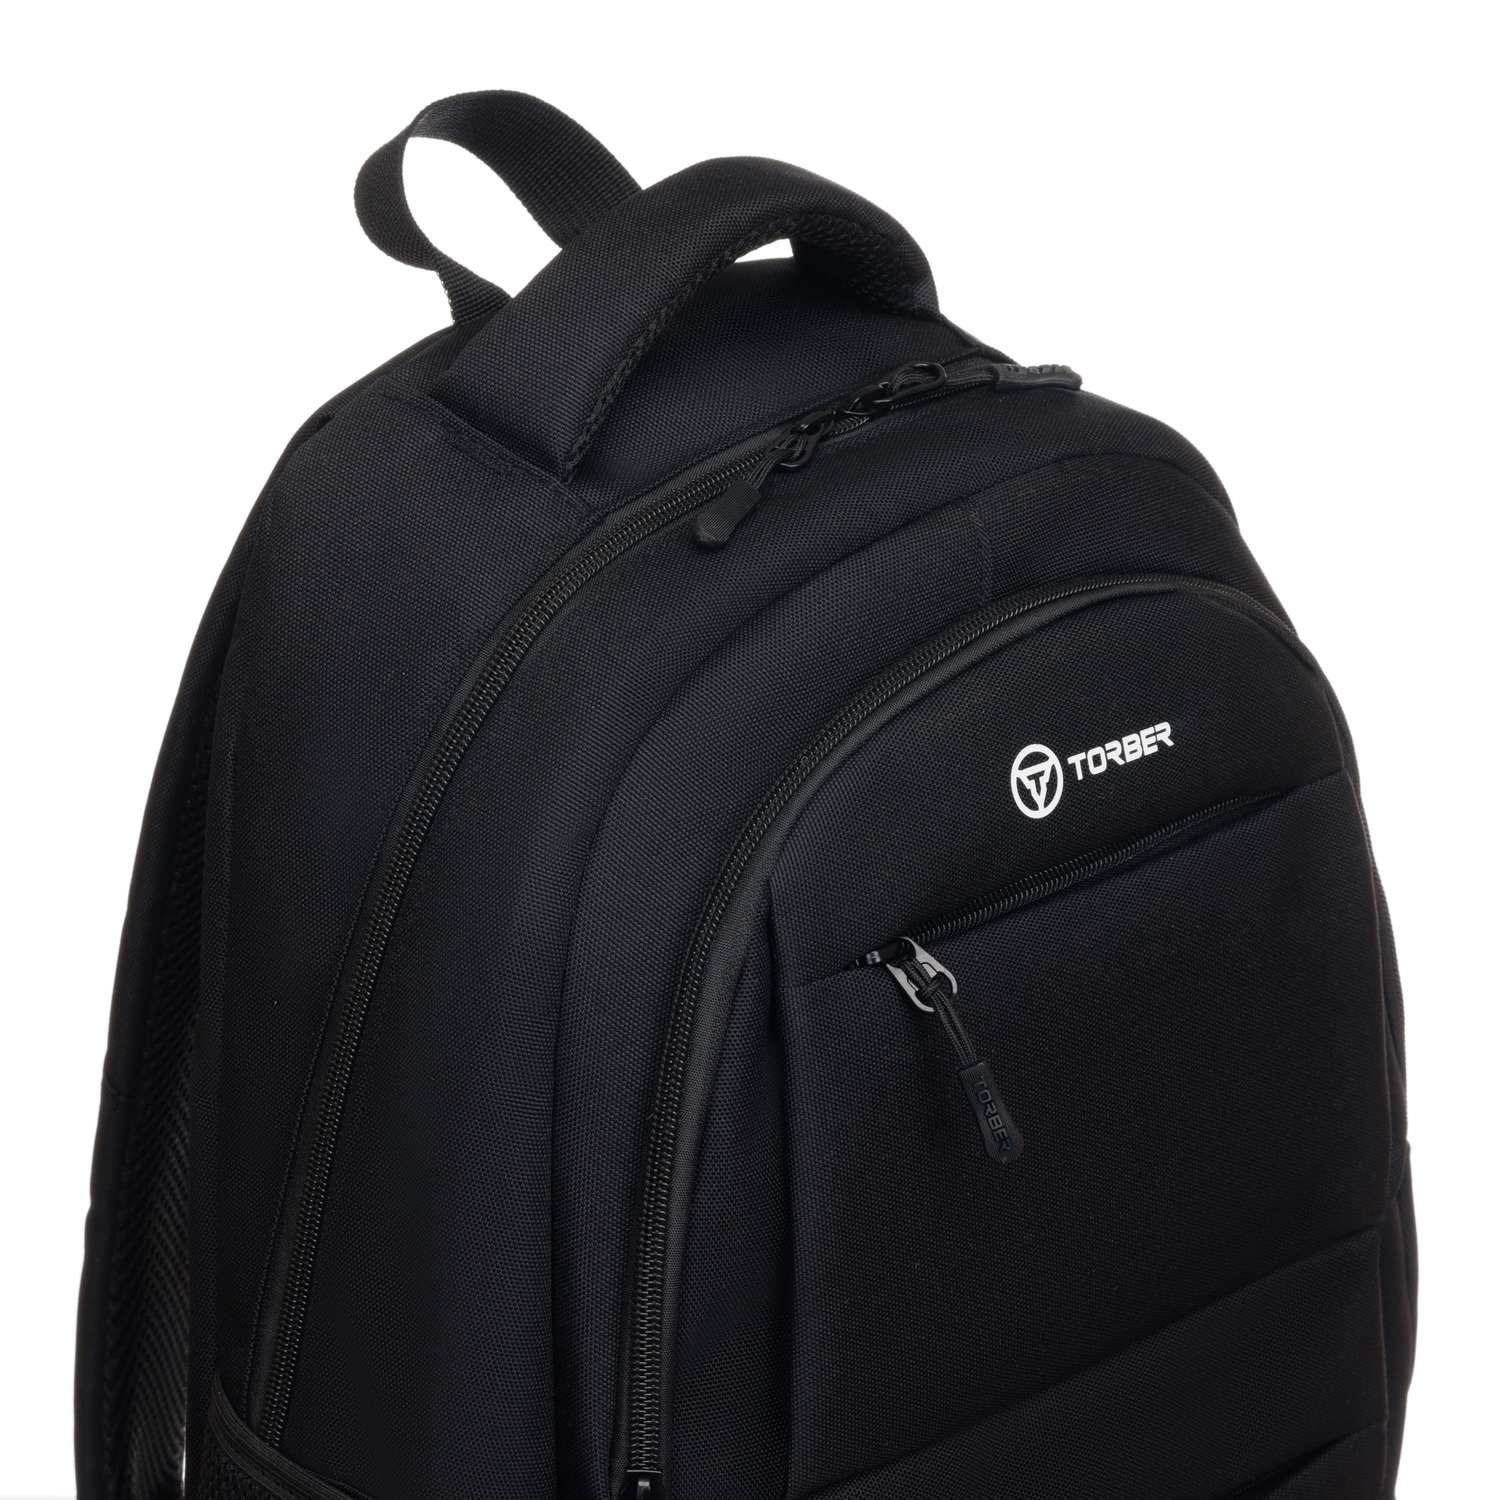 Рюкзак TORBER CLASS X черный и мешок для сменной обуви - фото 8